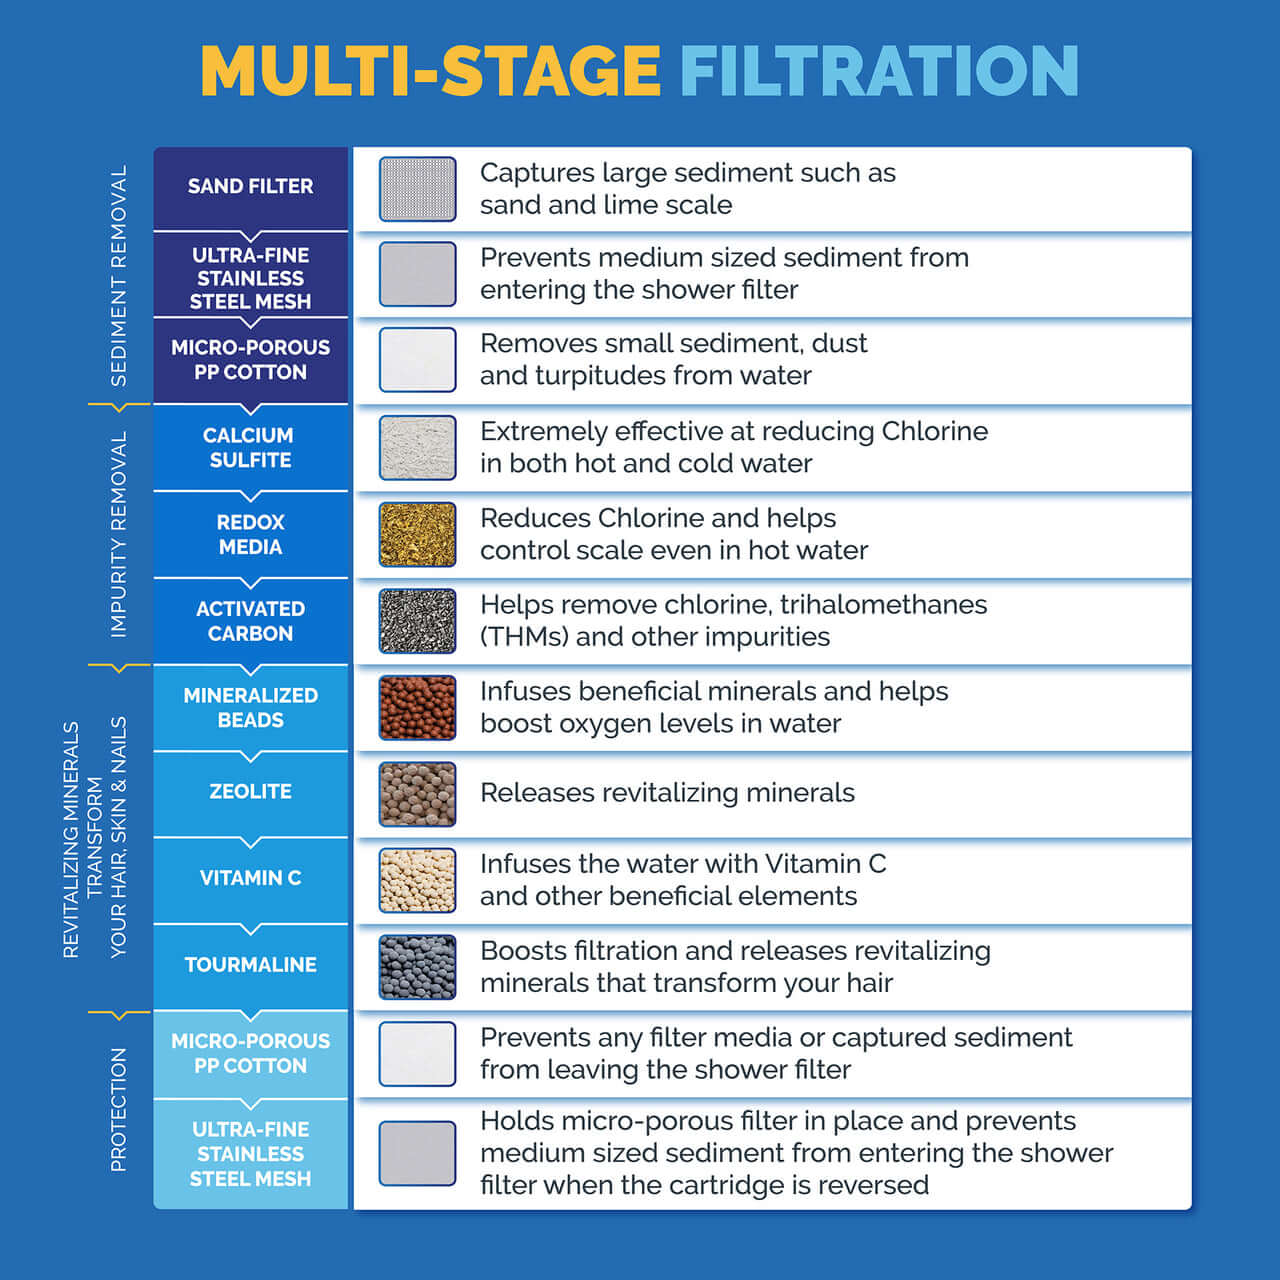 SF400 filtration breakdown